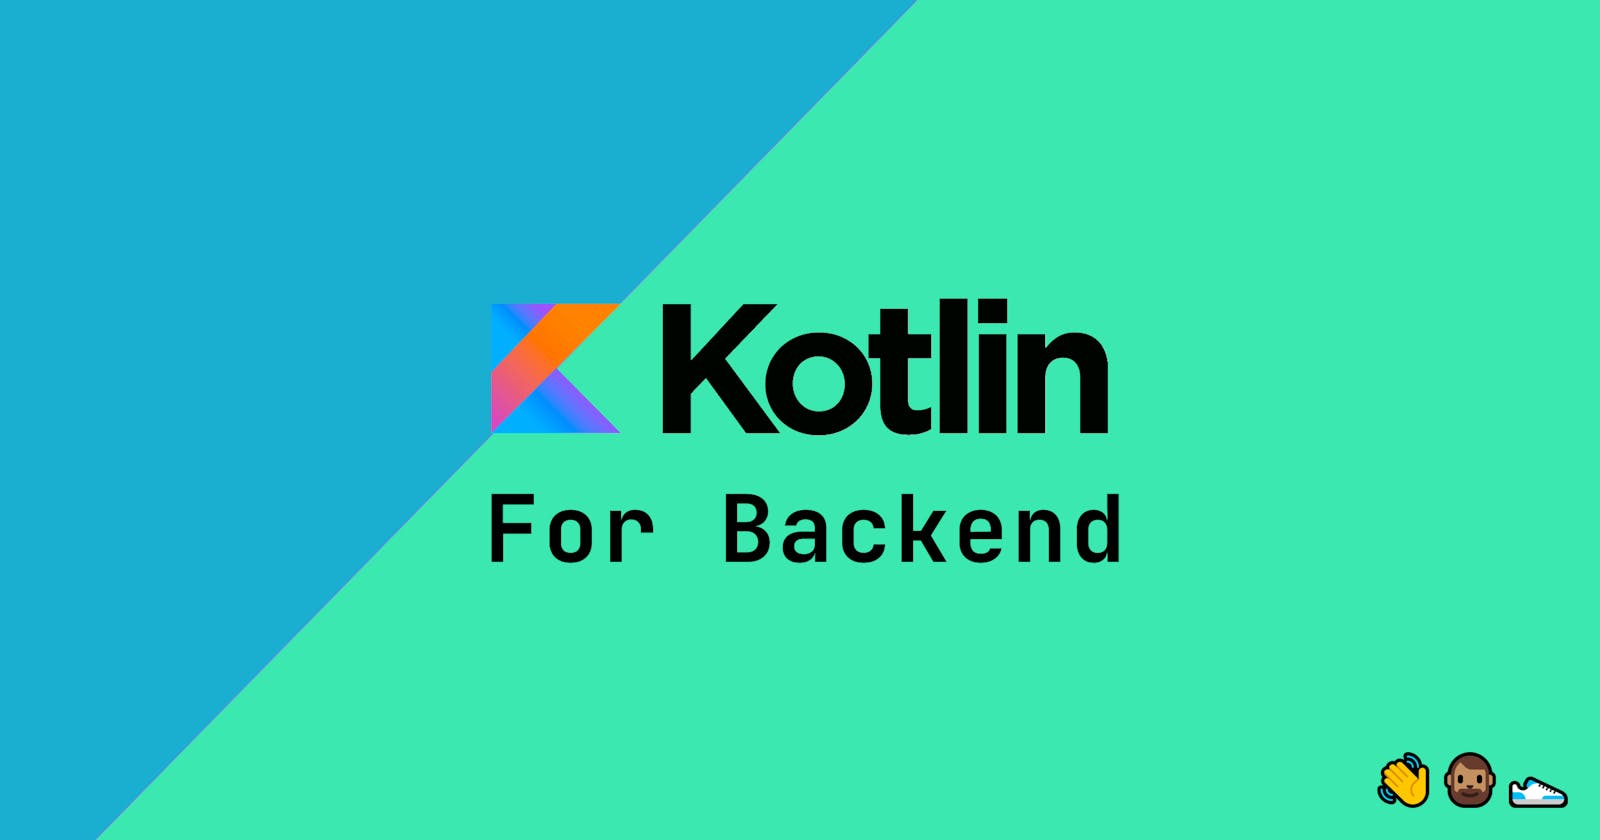 Kotlin for Backend.